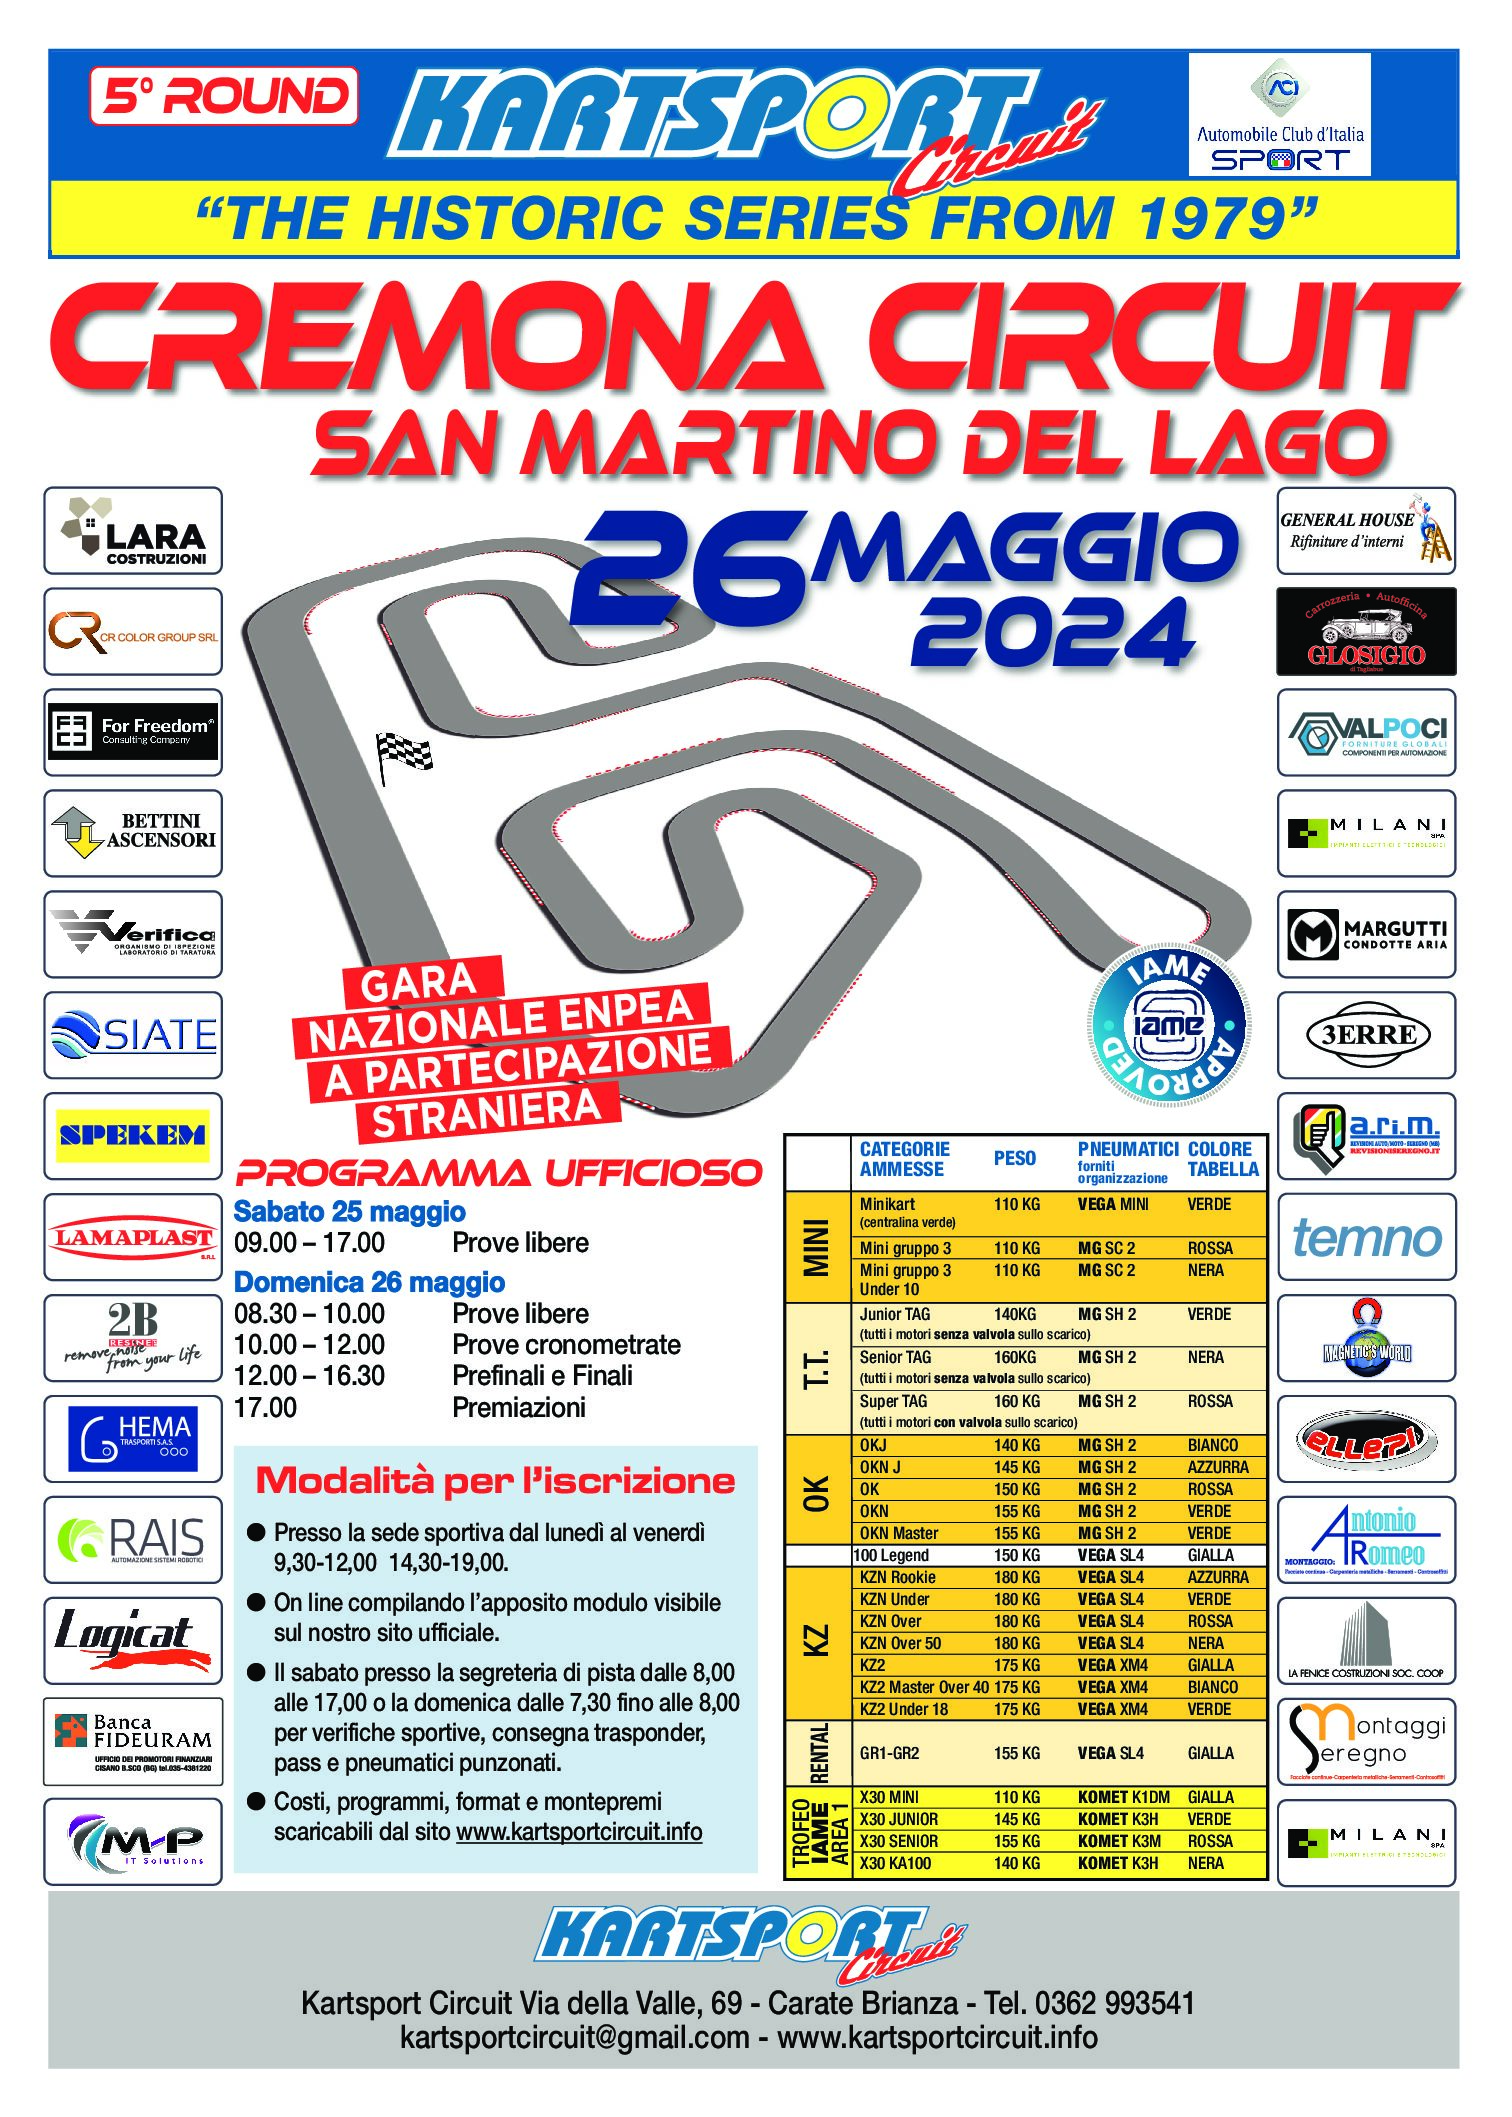 26 maggio 2024 5°Round ksc Cremona Distributore benzina autorizzata per gara 17 Marzo Cremona IP VIALE PASCOLI 7 SOLAROLO RAINERIO (CR)